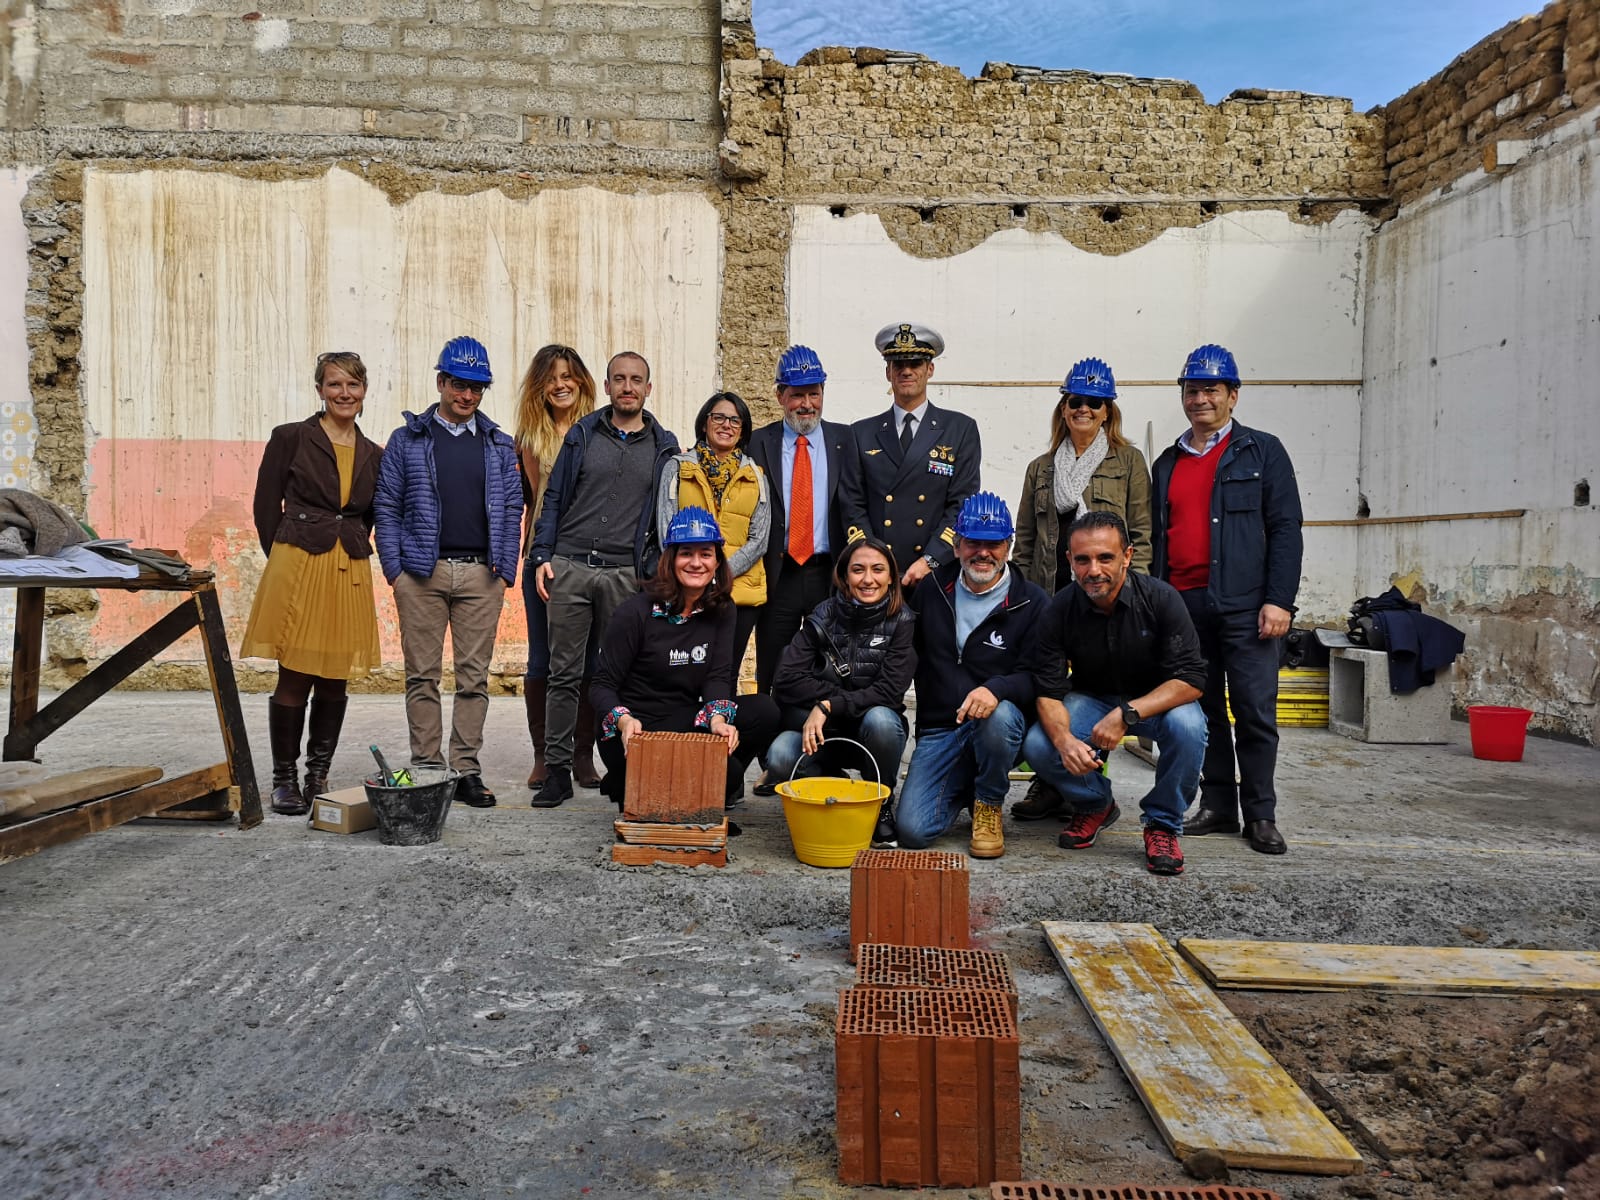 23 novembre, posata la prima pietra del progetto Sa Domu Pittica Su Coru Mannu in Sardegna